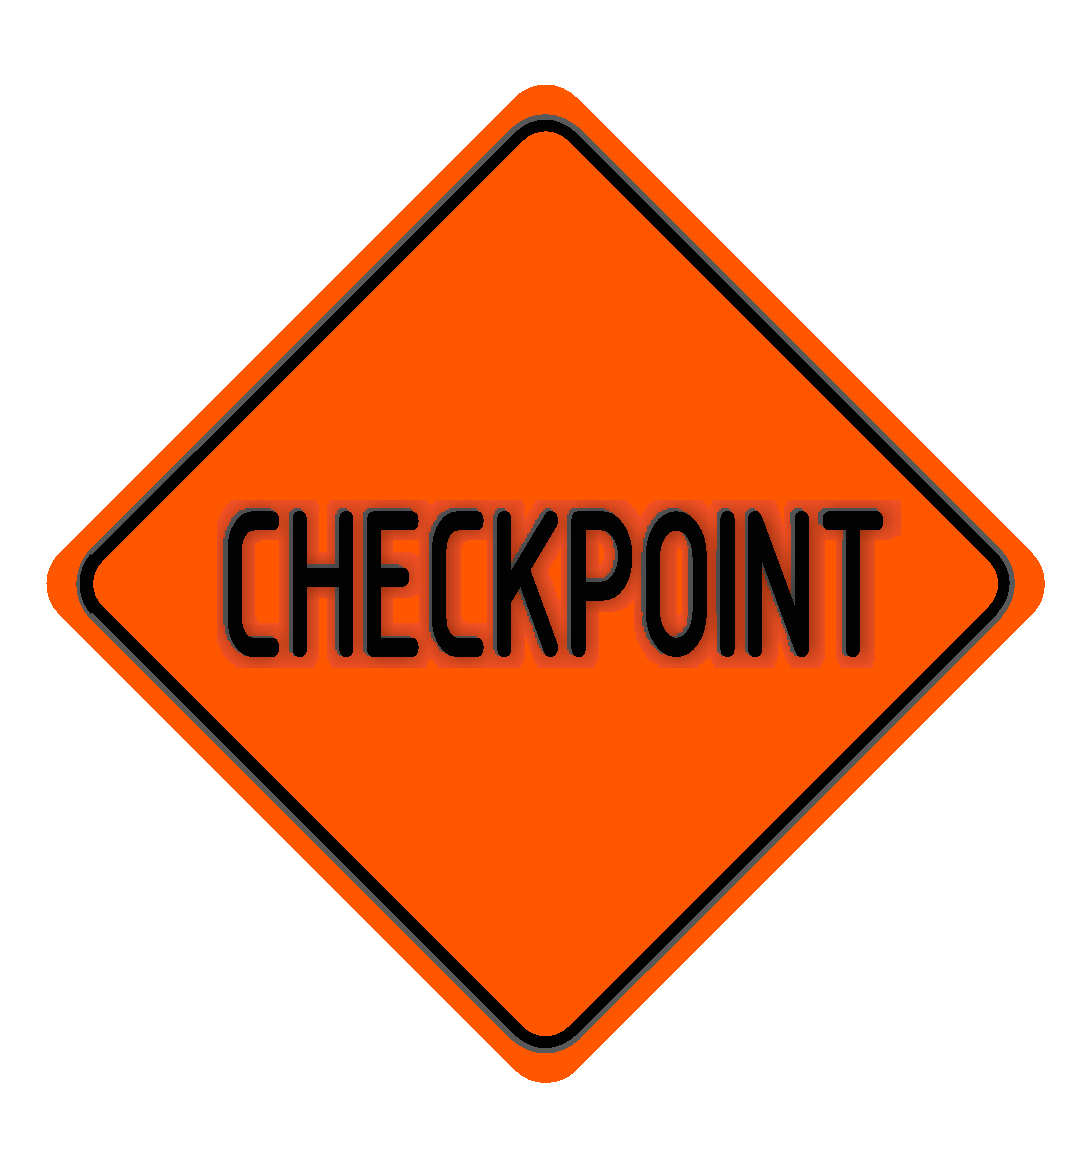 Чик поинт. ЧЕКПОИНТ. Checkpoint изображение. ЧЕКПОИНТ логотип. ЧЕКПОИНТ В игре.